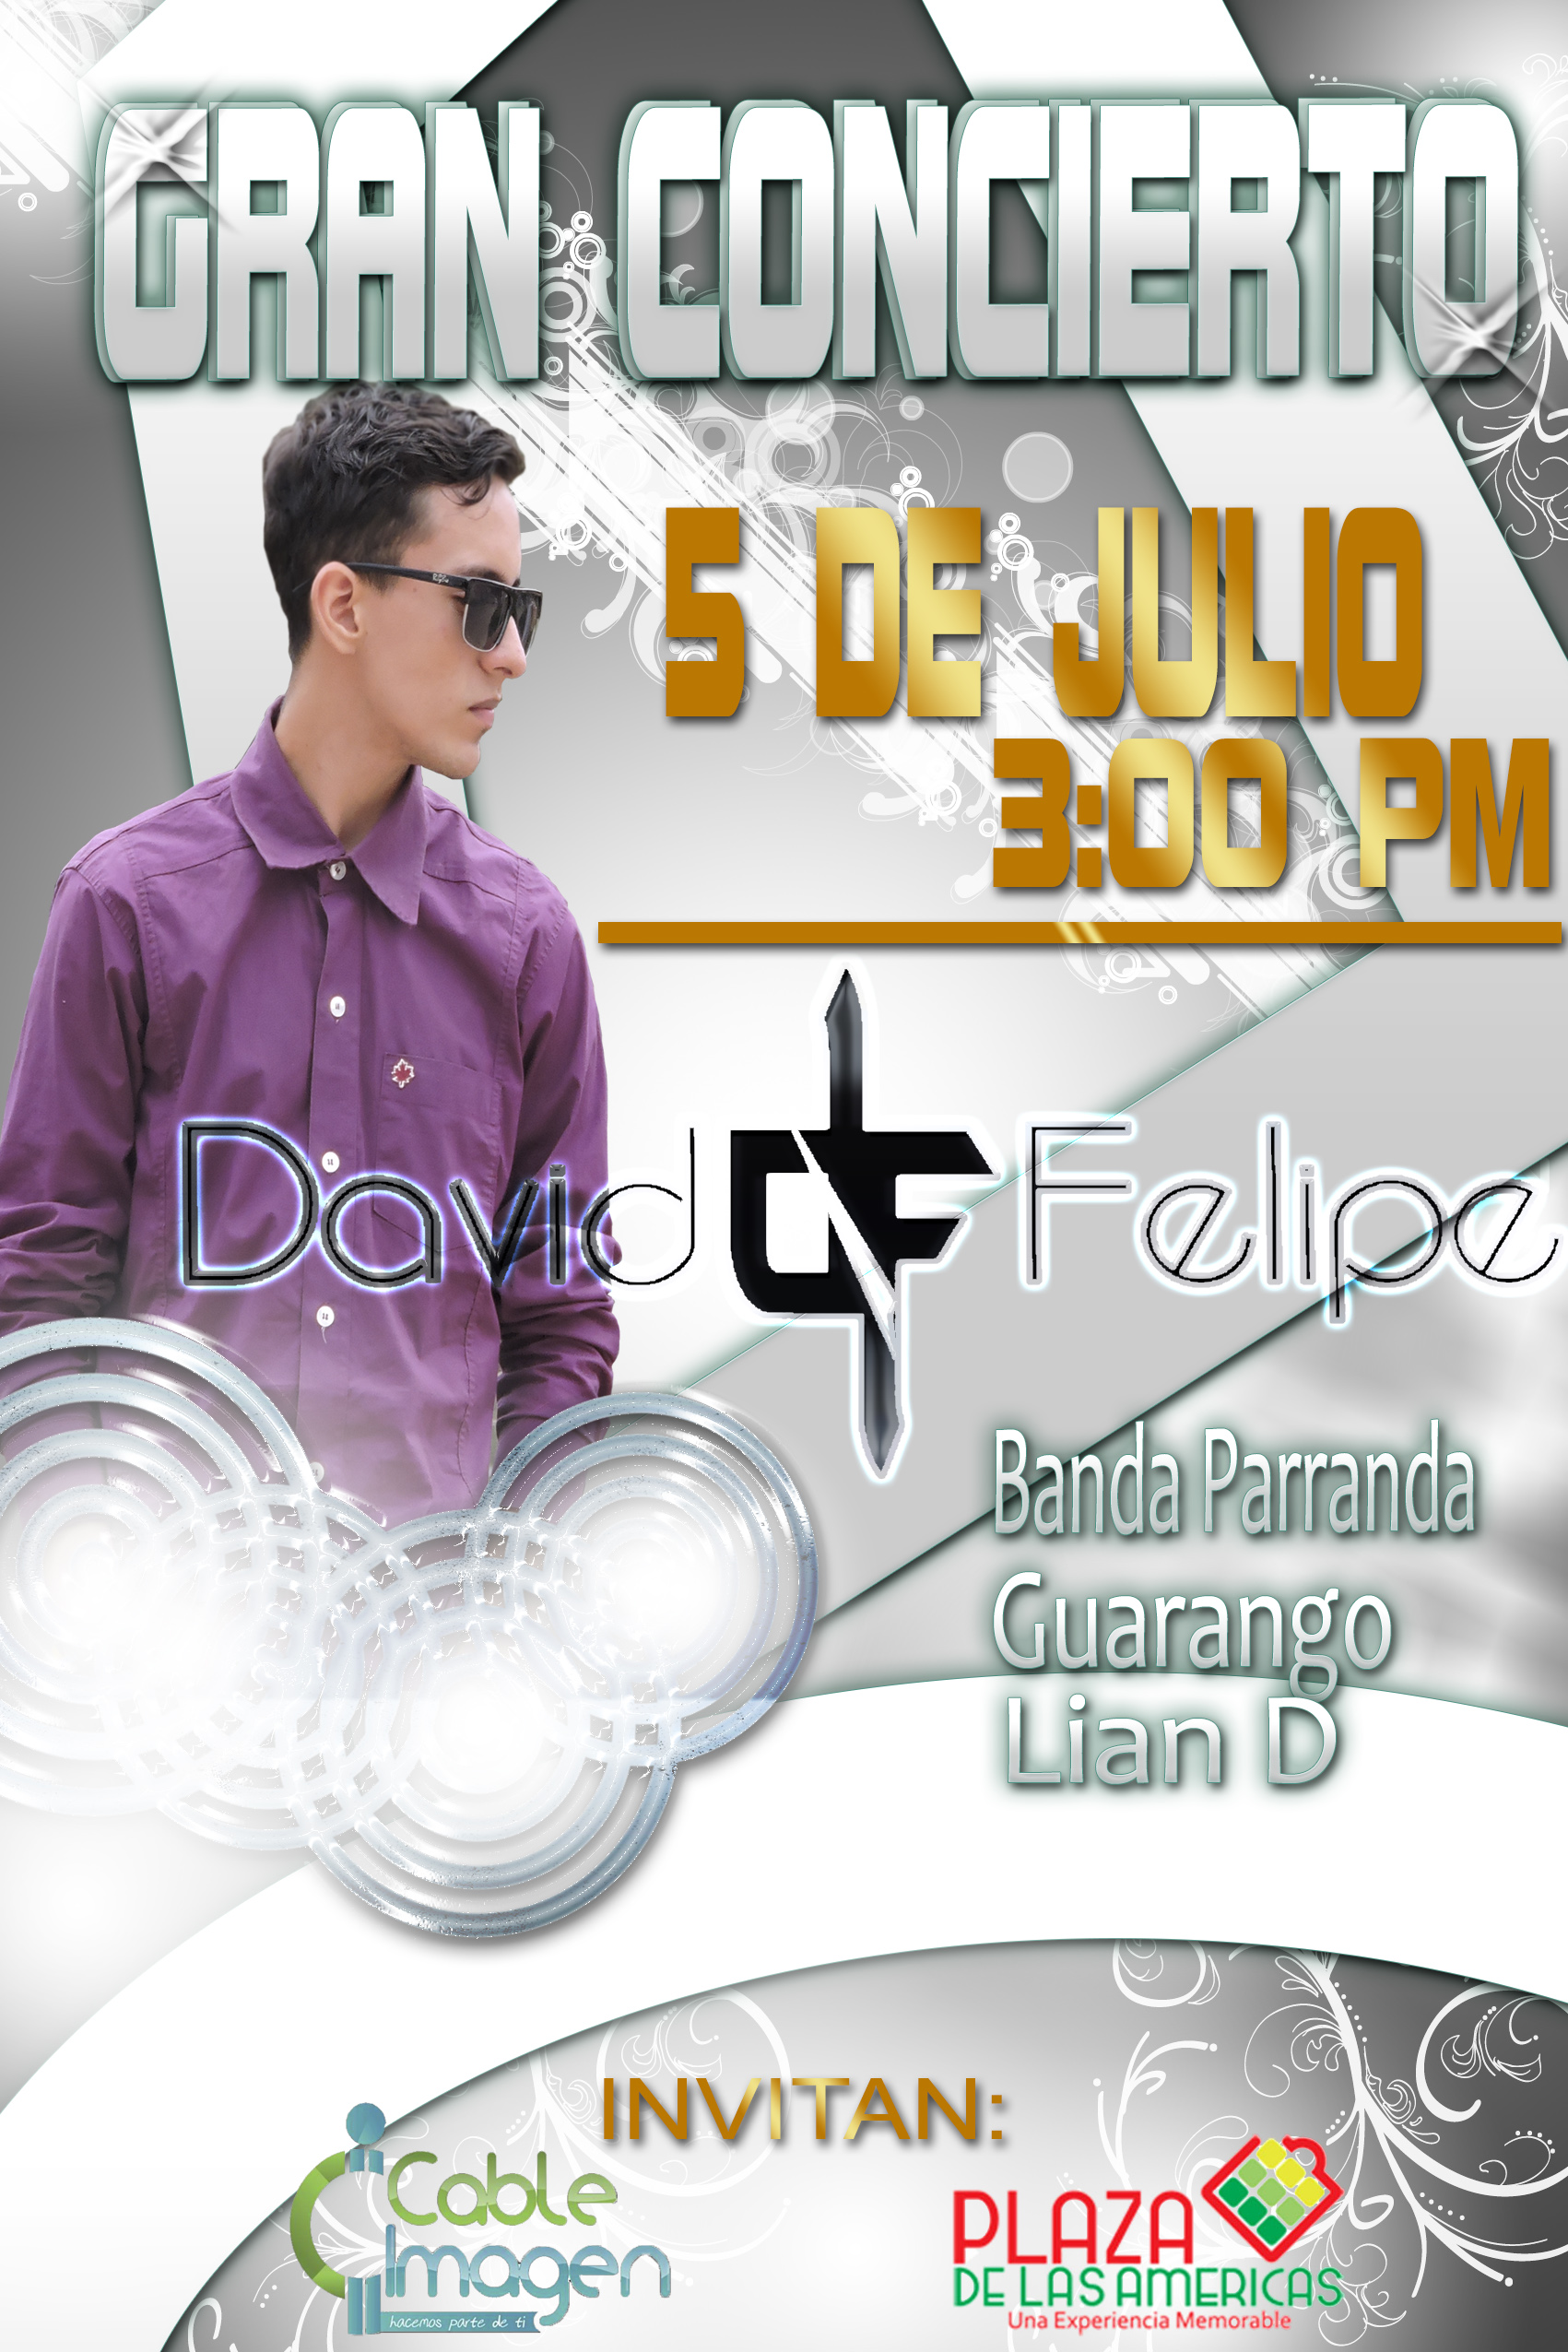 Gran concierto este 5 de julio Plaza de las  Americas David Felipe "El Cantante "     